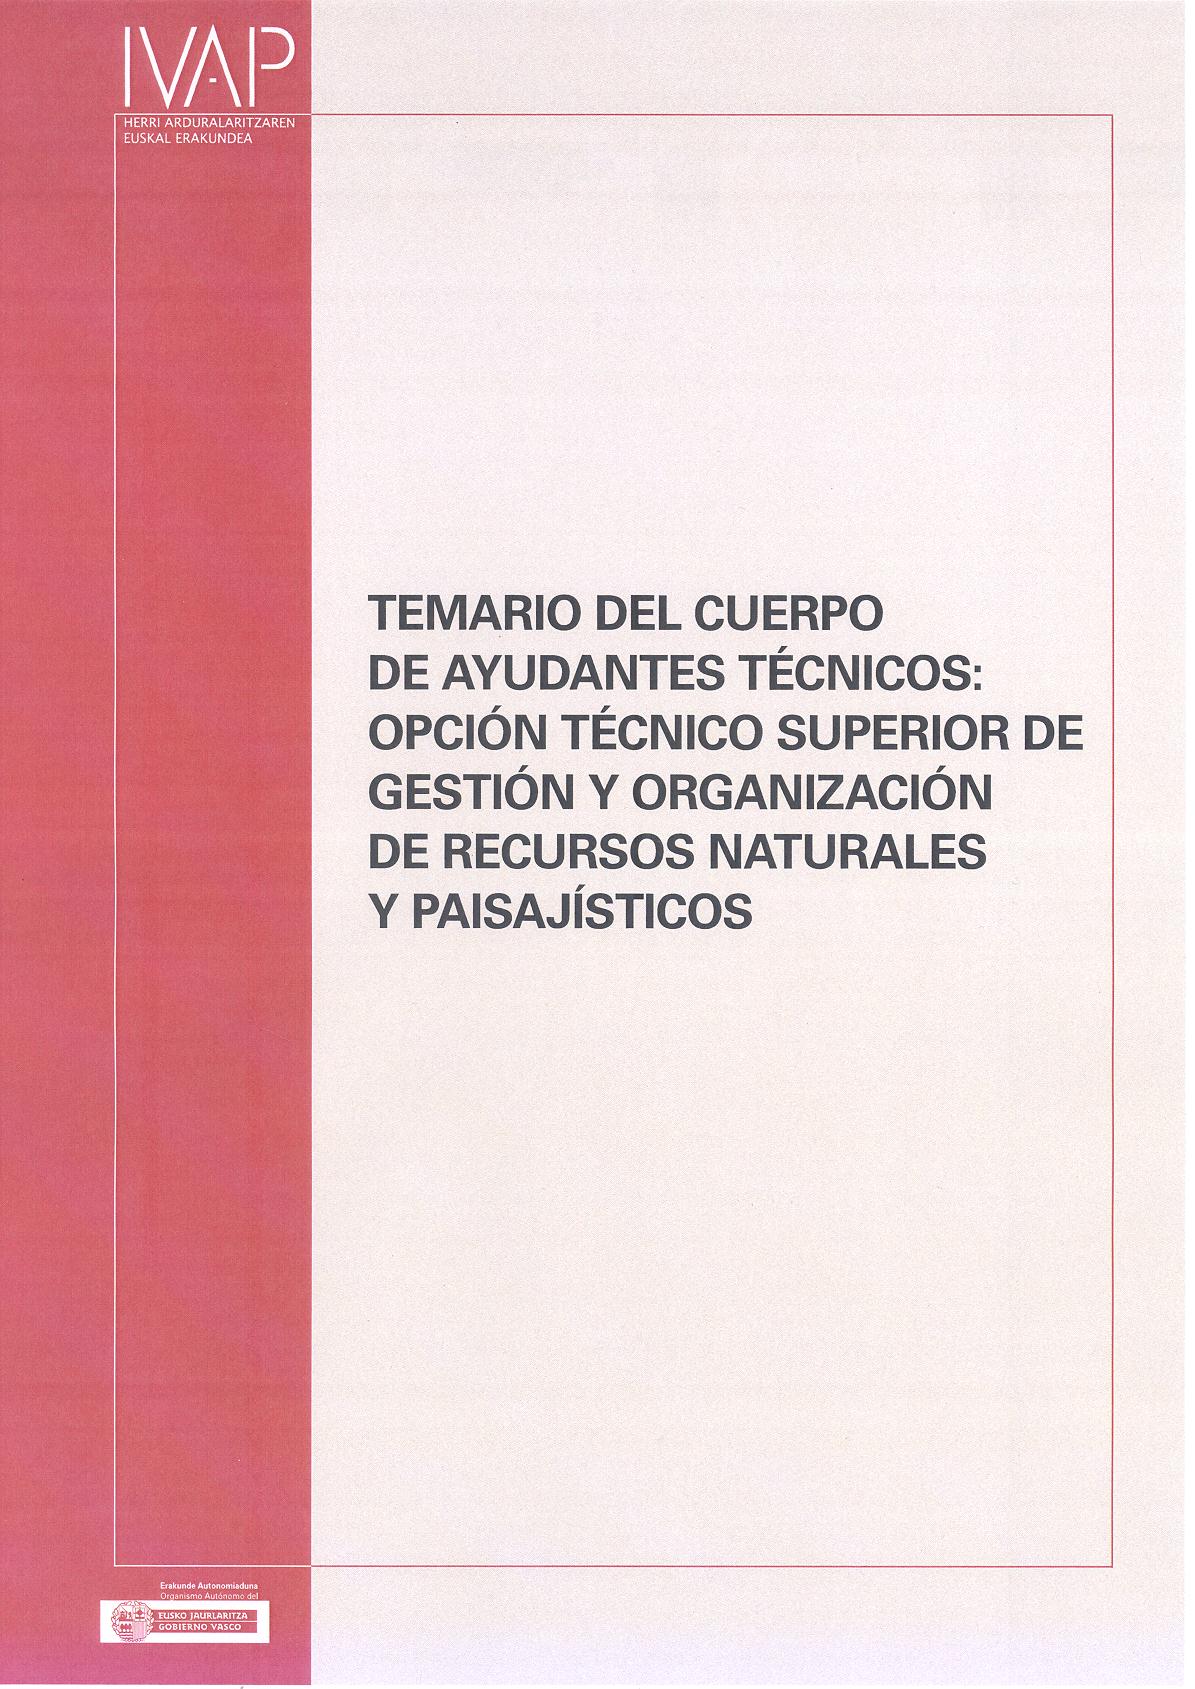 Temario el Cuerpo de Ayudantes Técnicos: Opción Técnico Superior de gestión y organización de recursos naturales y paisajísticos